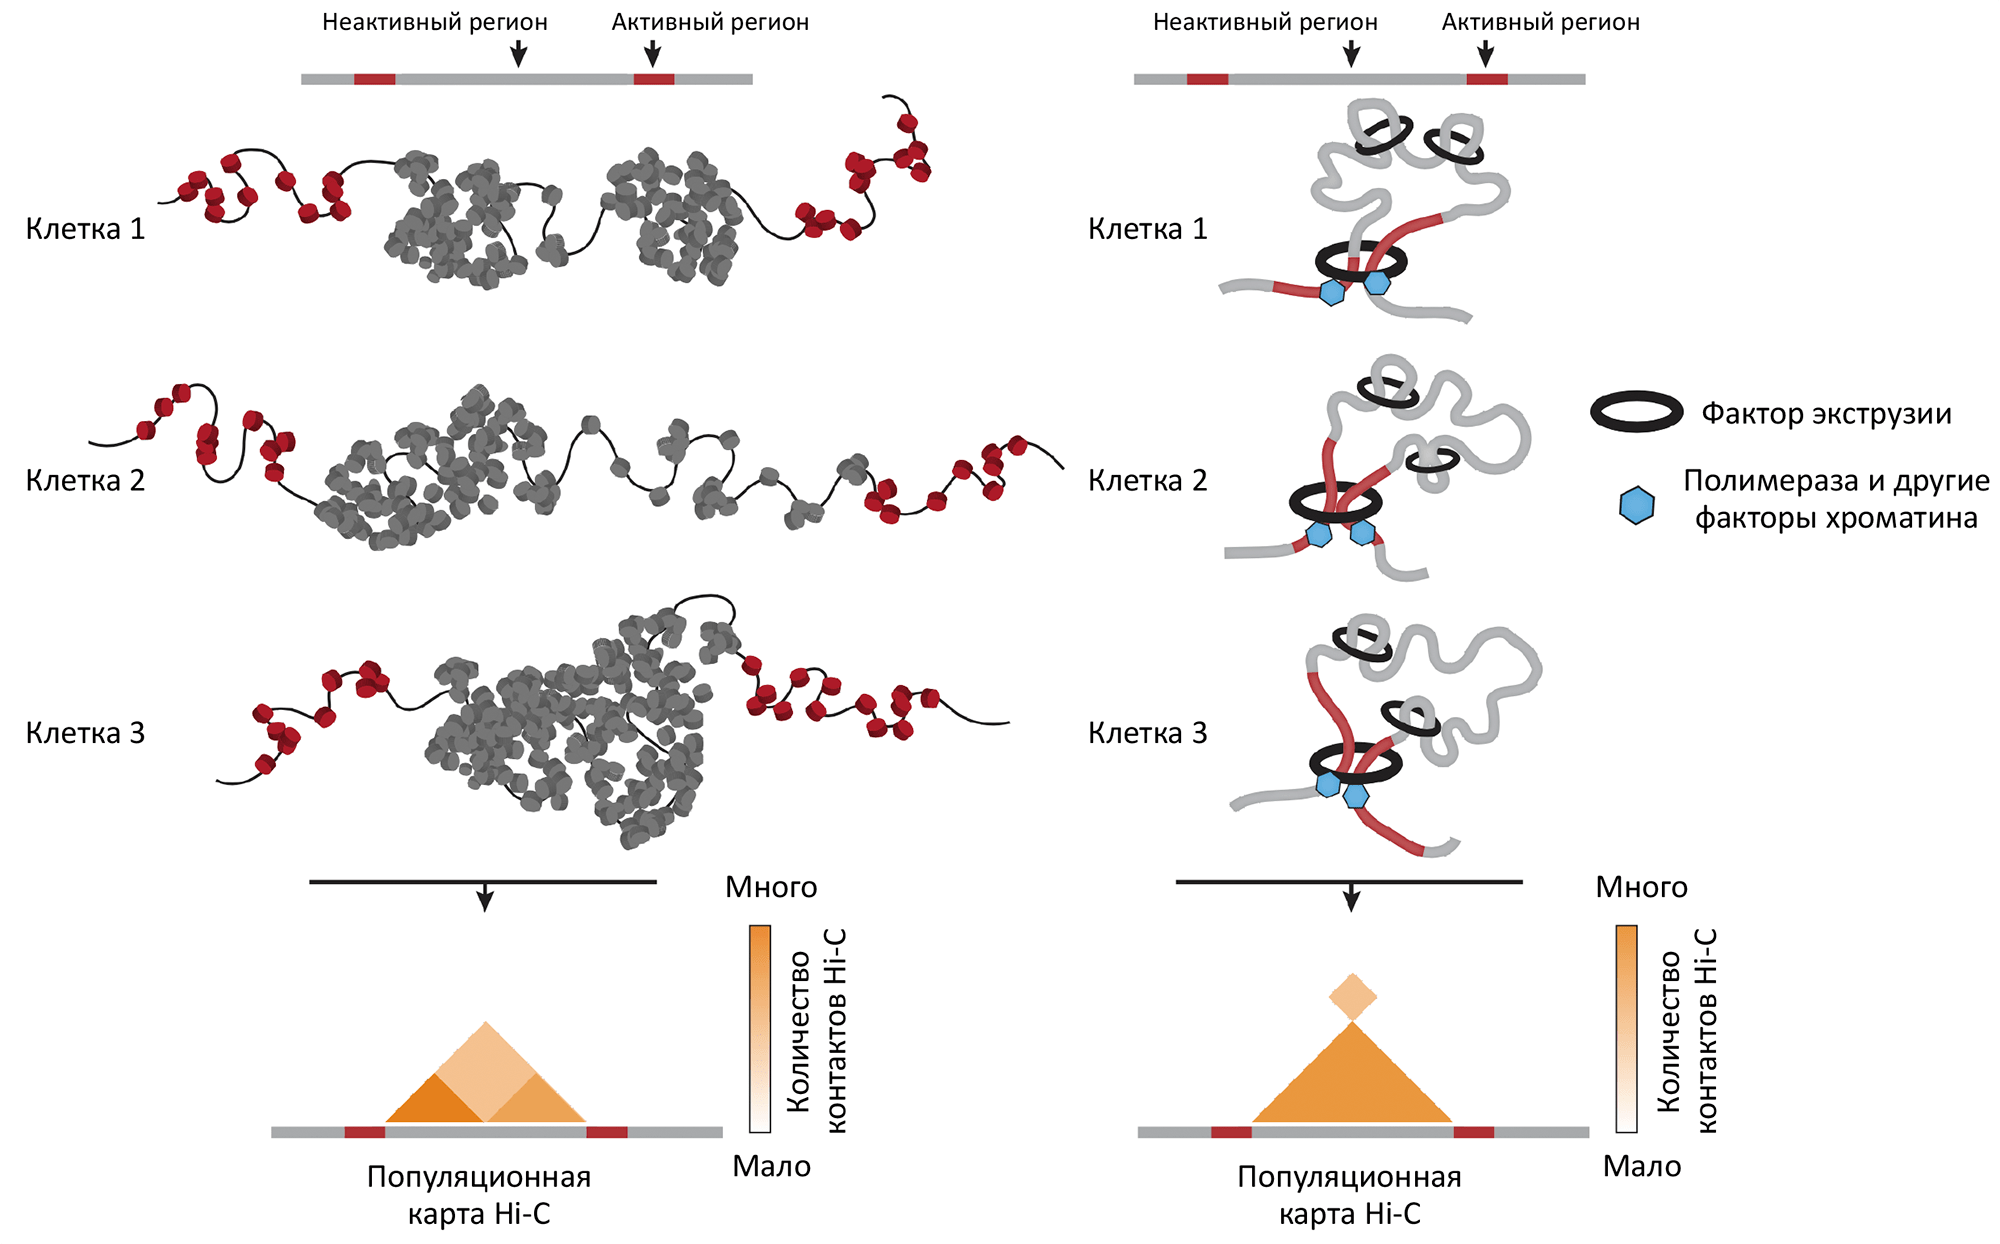 Гипотезы формирования стабильных доменов в хроматине дрозофилы